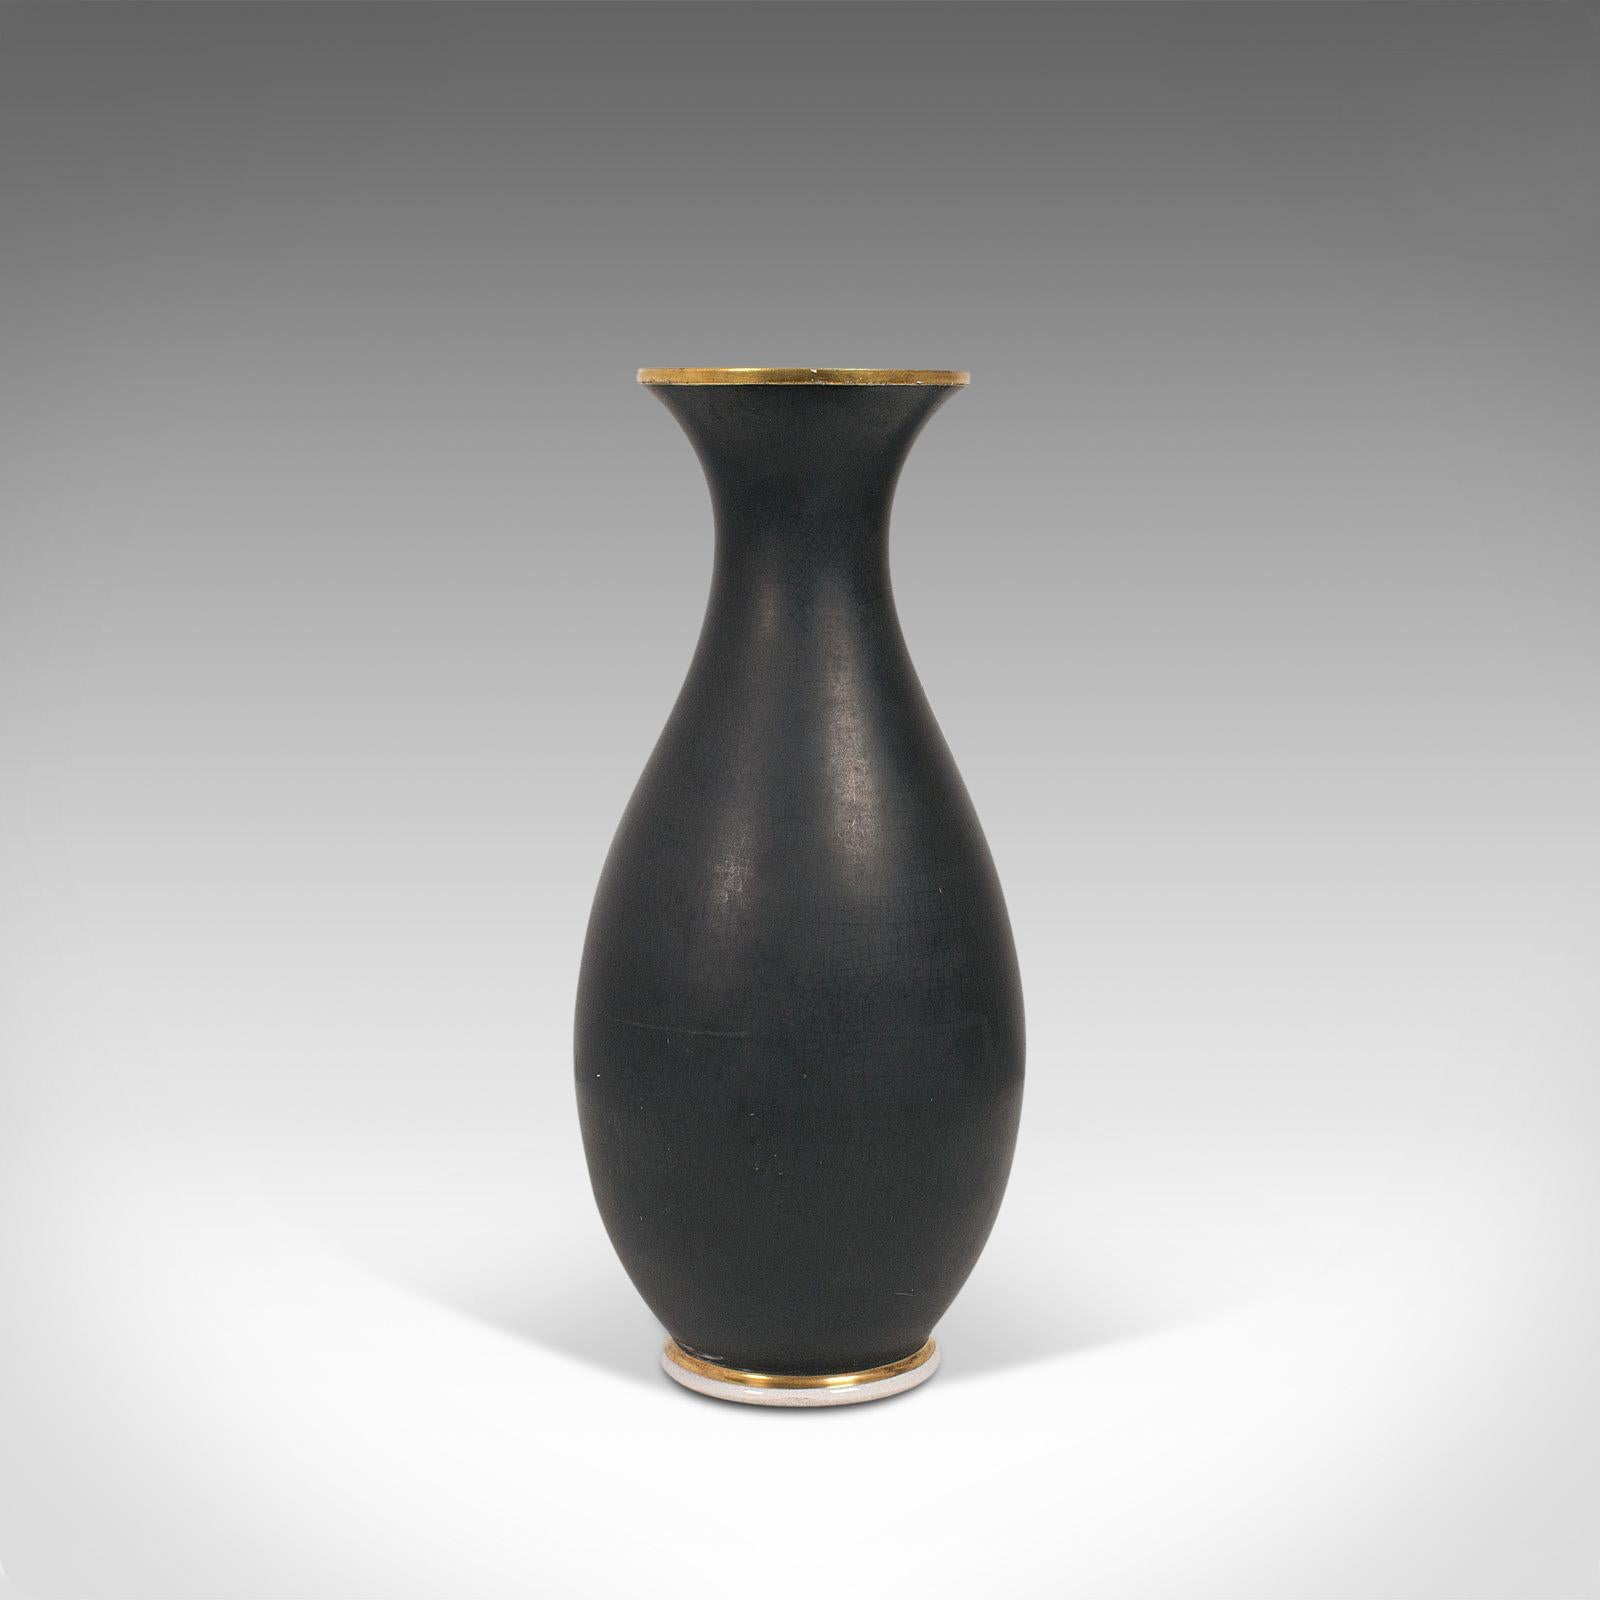 Antique Decorative Vase, English, Ceramic, Baluster Urn, Neoclassical, Victorian 1